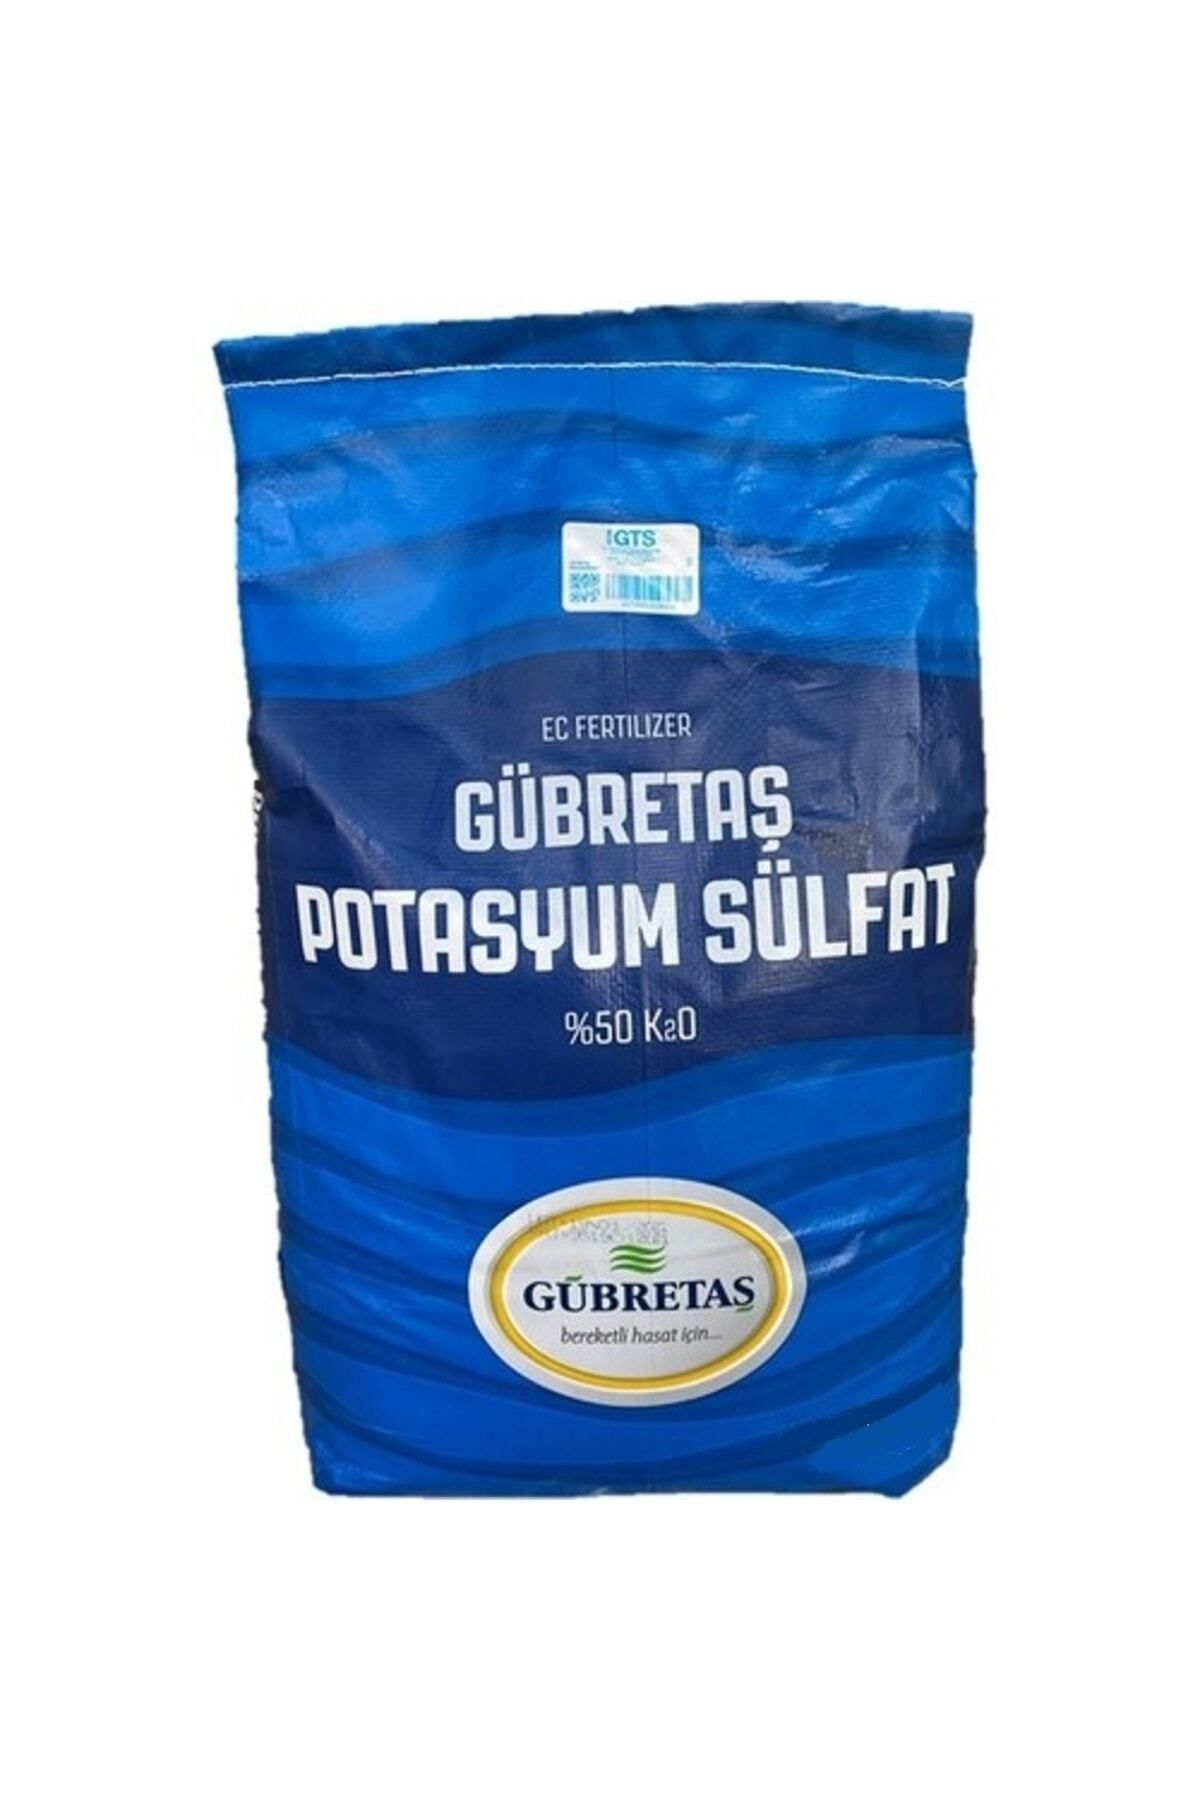 Gübretaş Potasyum Sülfat - Toz Gübre 1 Kg Potasyum Gübresi